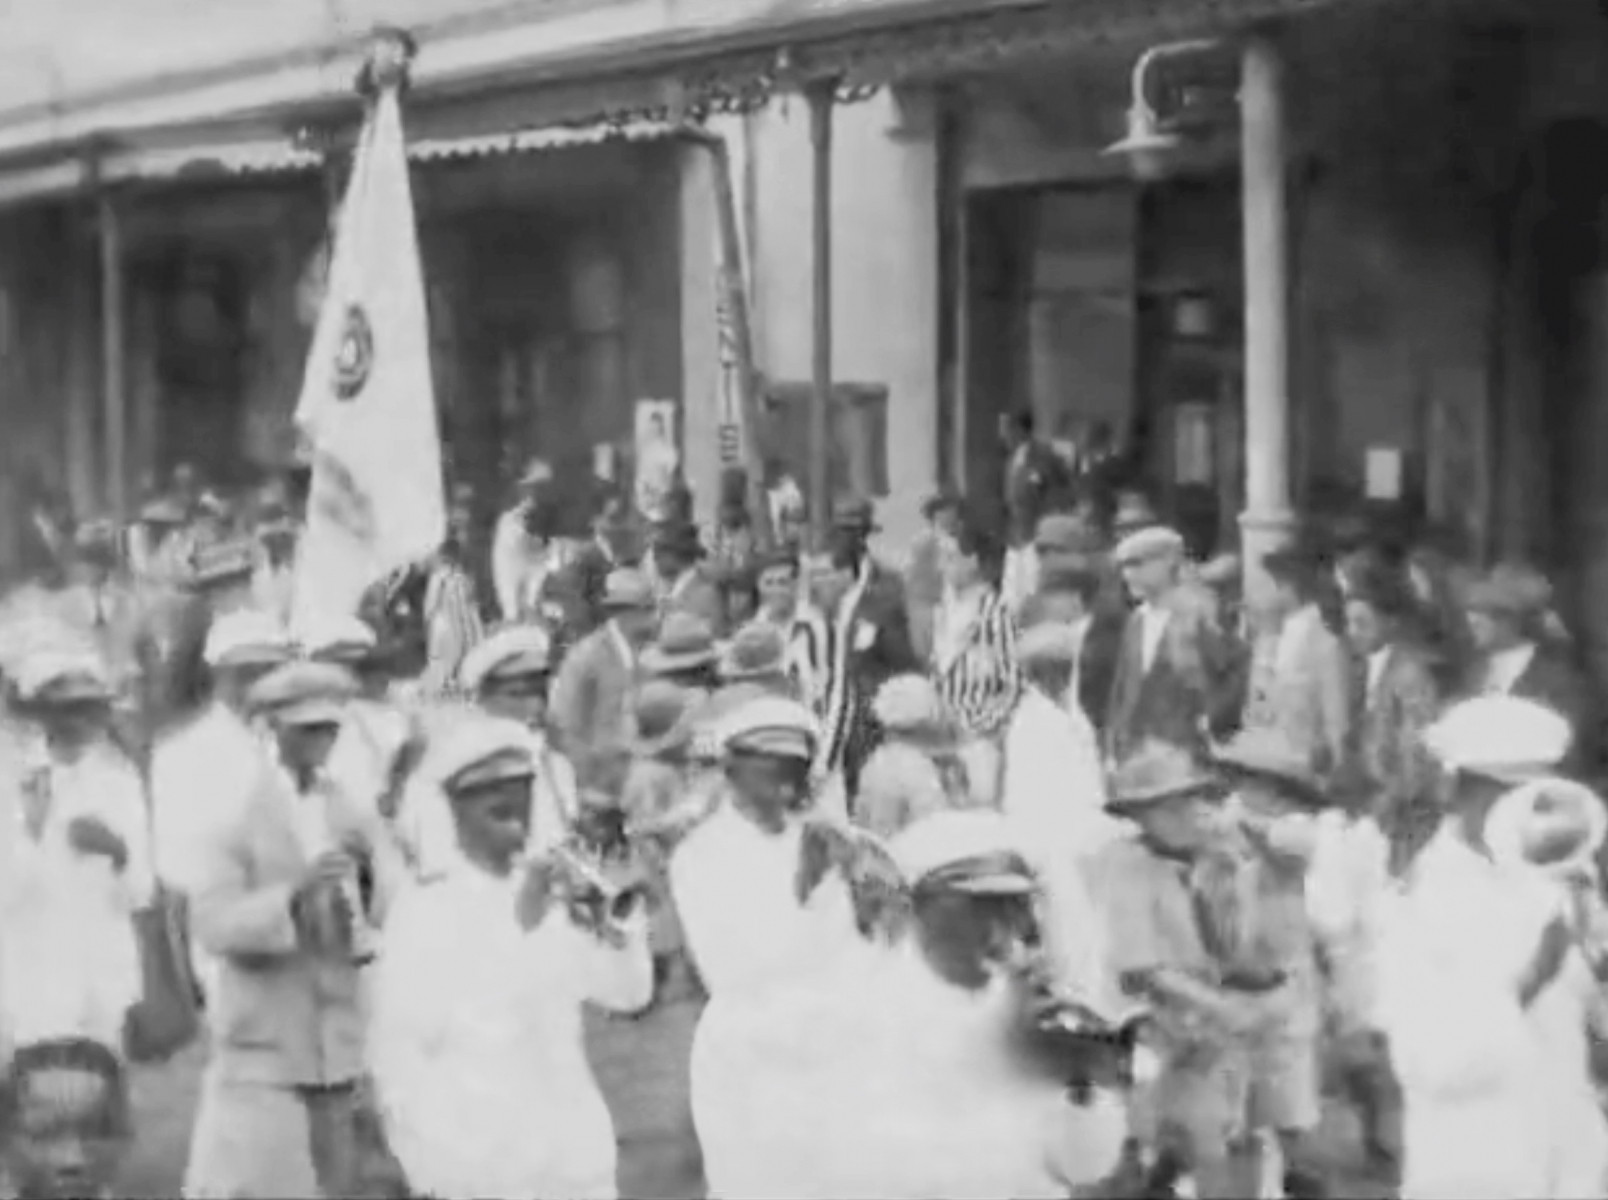 Festejos em Lourenço Marques pela passagem dos territórios do Niassa para a posse do Estado / Fête à Lourenço Marques